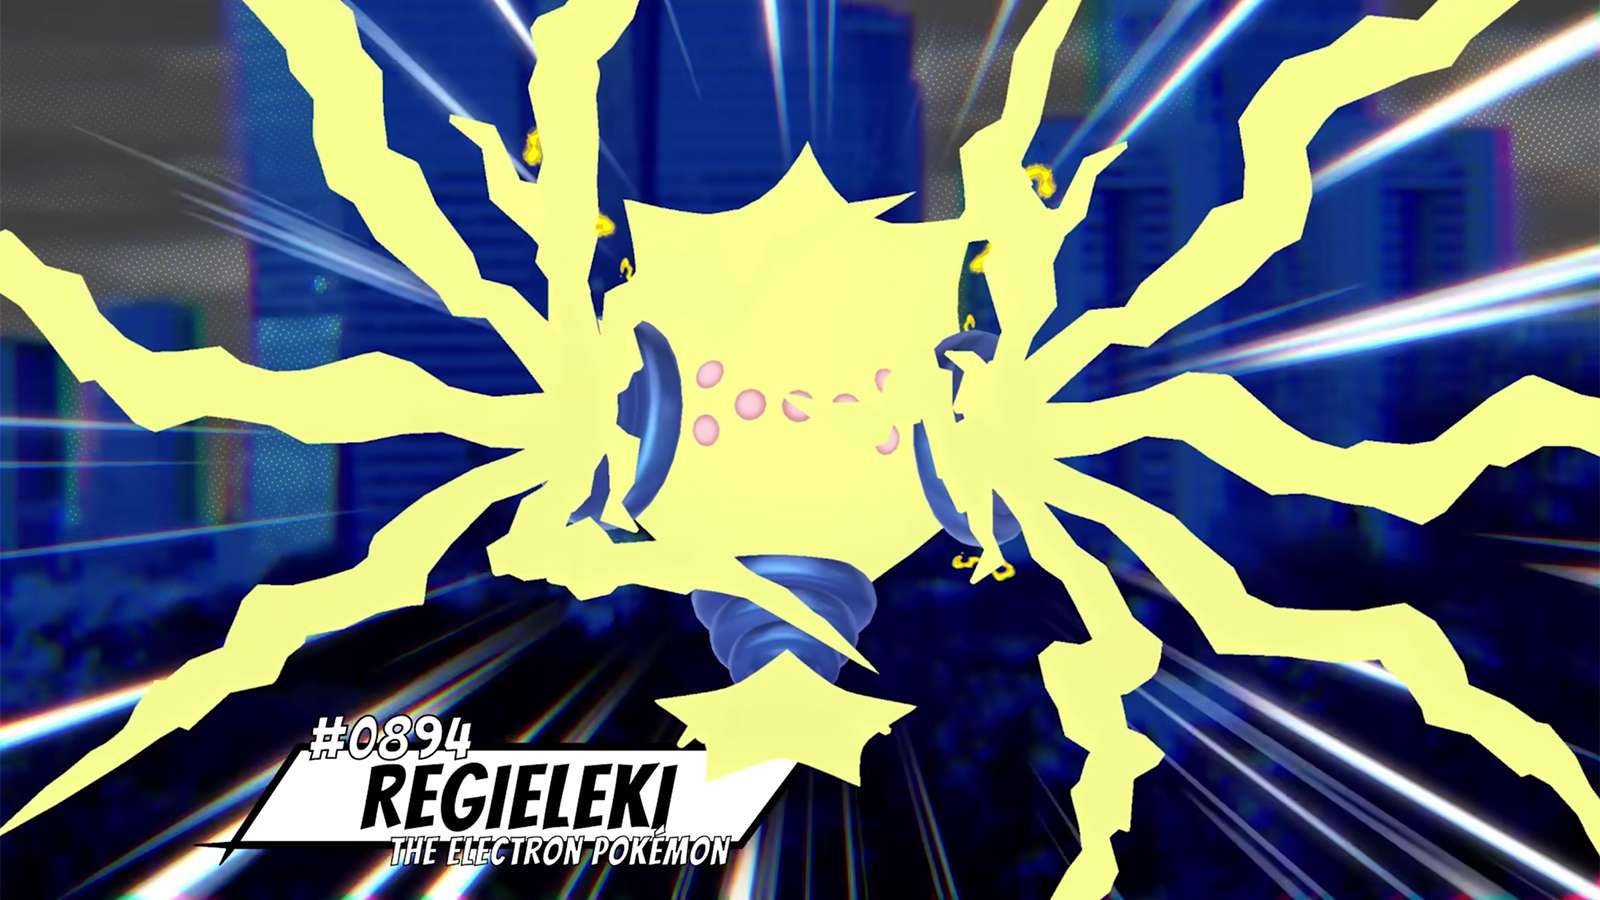 Regieleki appearing in an Elite Raid in Pokemon GO